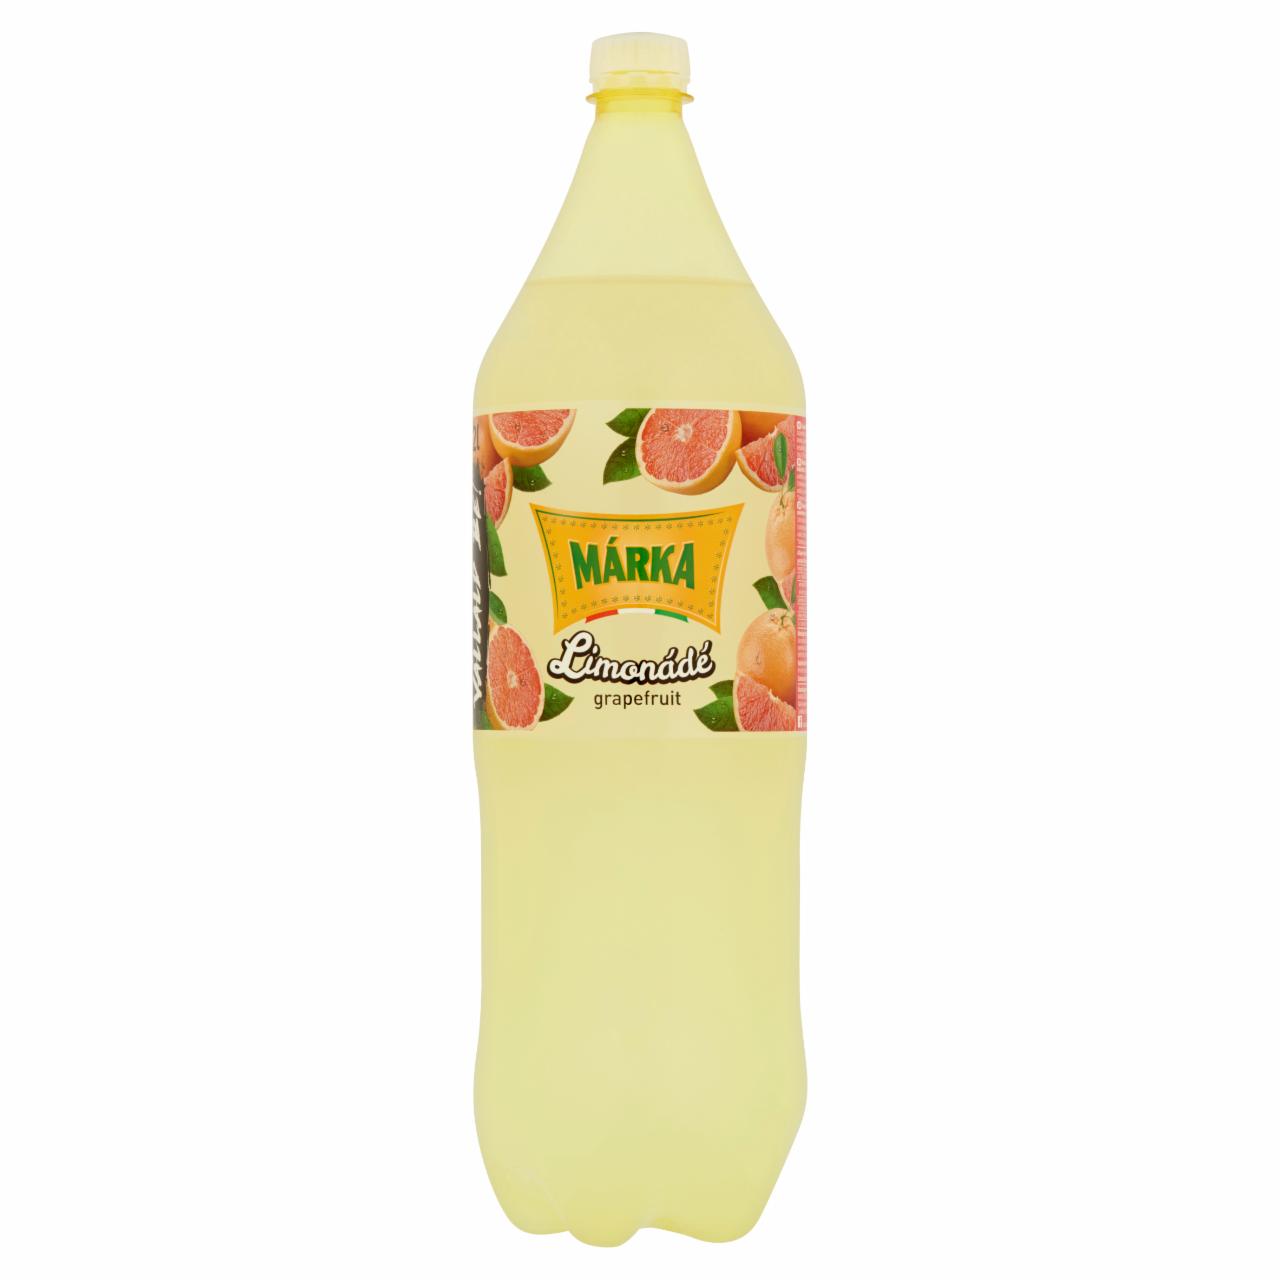 Képek - Márka Limonádé grapefruit-citromfű ízű energiamentes szénsavas üdítőital édesítőszerekkel 1,5 l